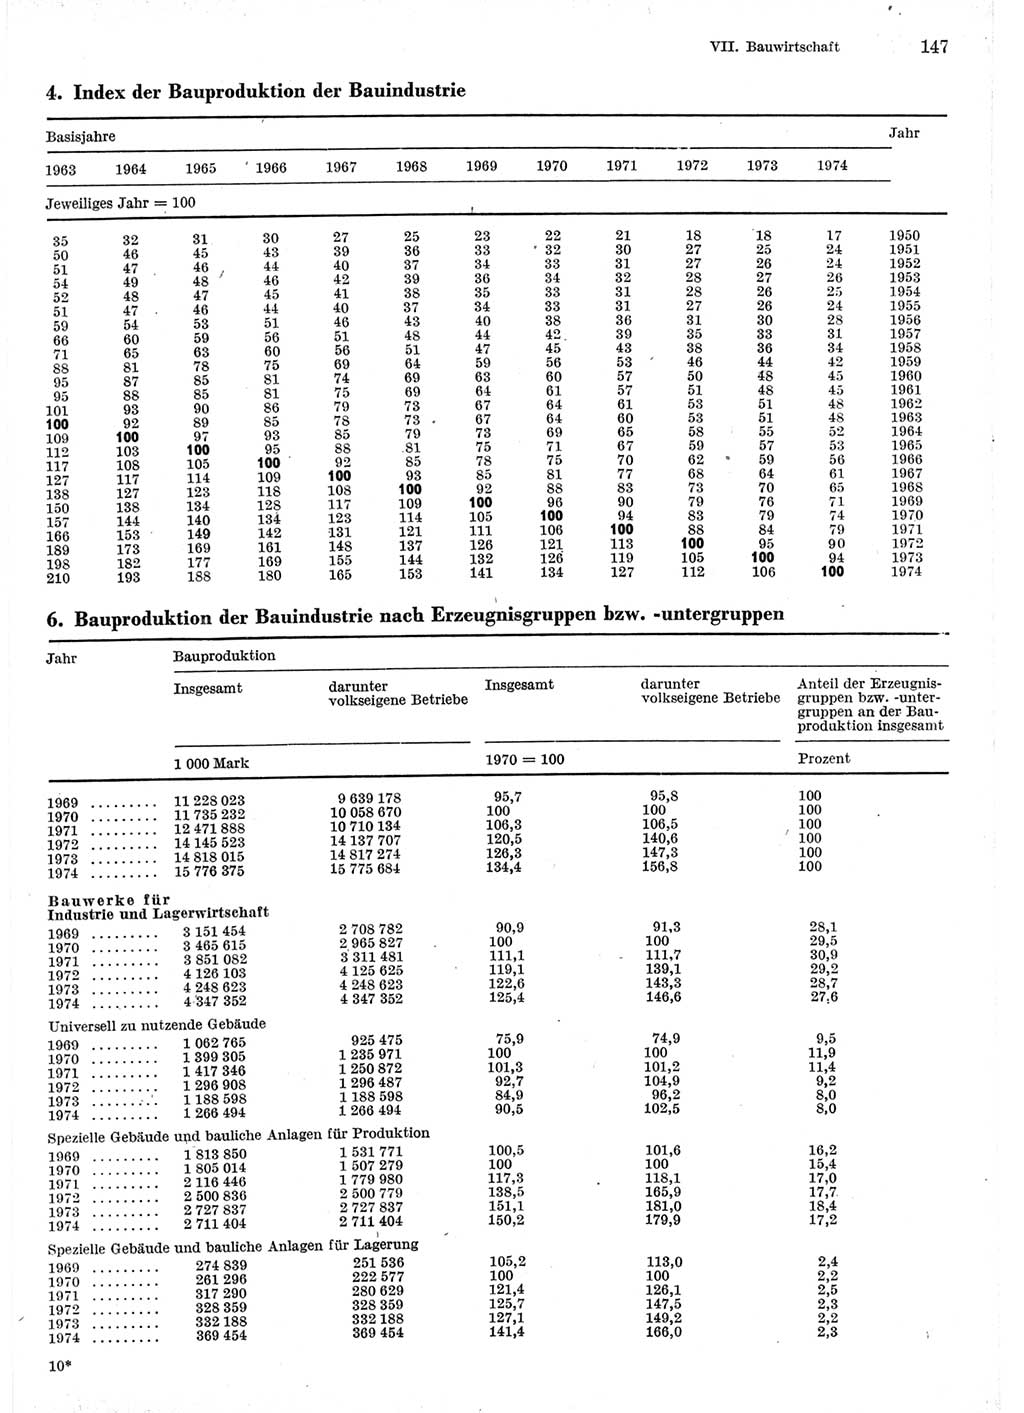 Statistisches Jahrbuch der Deutschen Demokratischen Republik (DDR) 1975, Seite 147 (Stat. Jb. DDR 1975, S. 147)